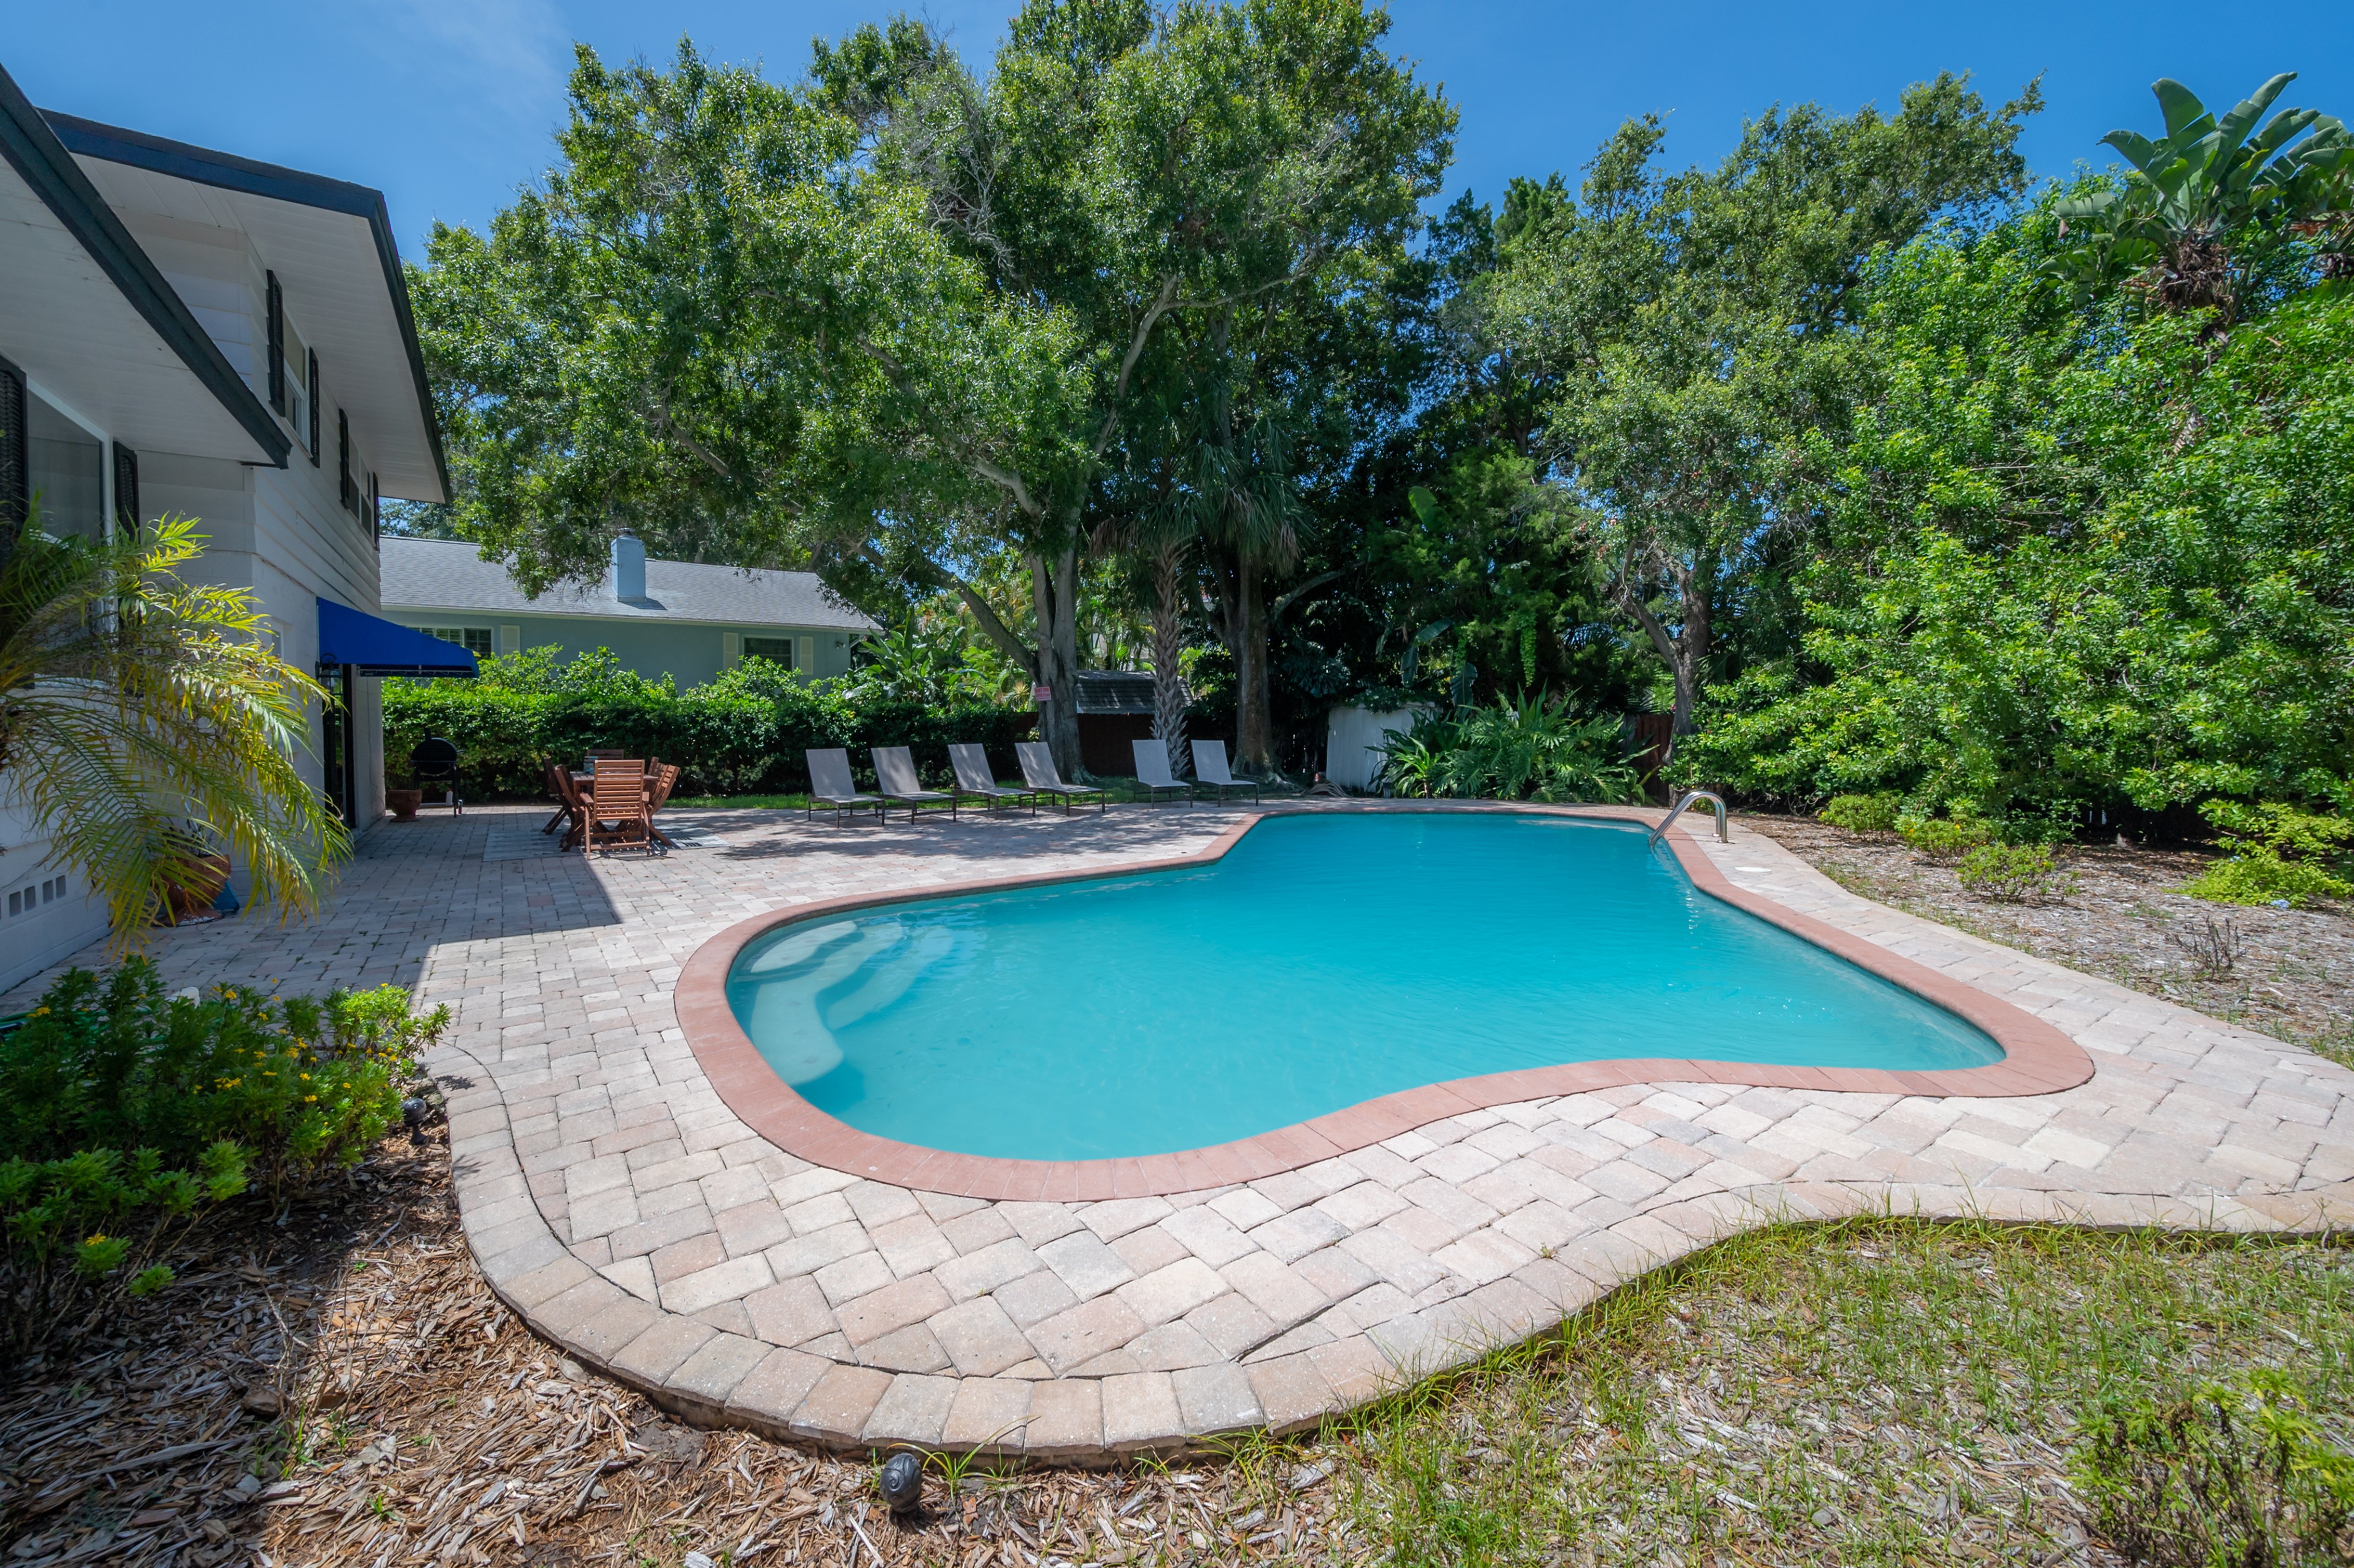 NEW! Beautiful Seminole Pool Home - Mins to Gulf!